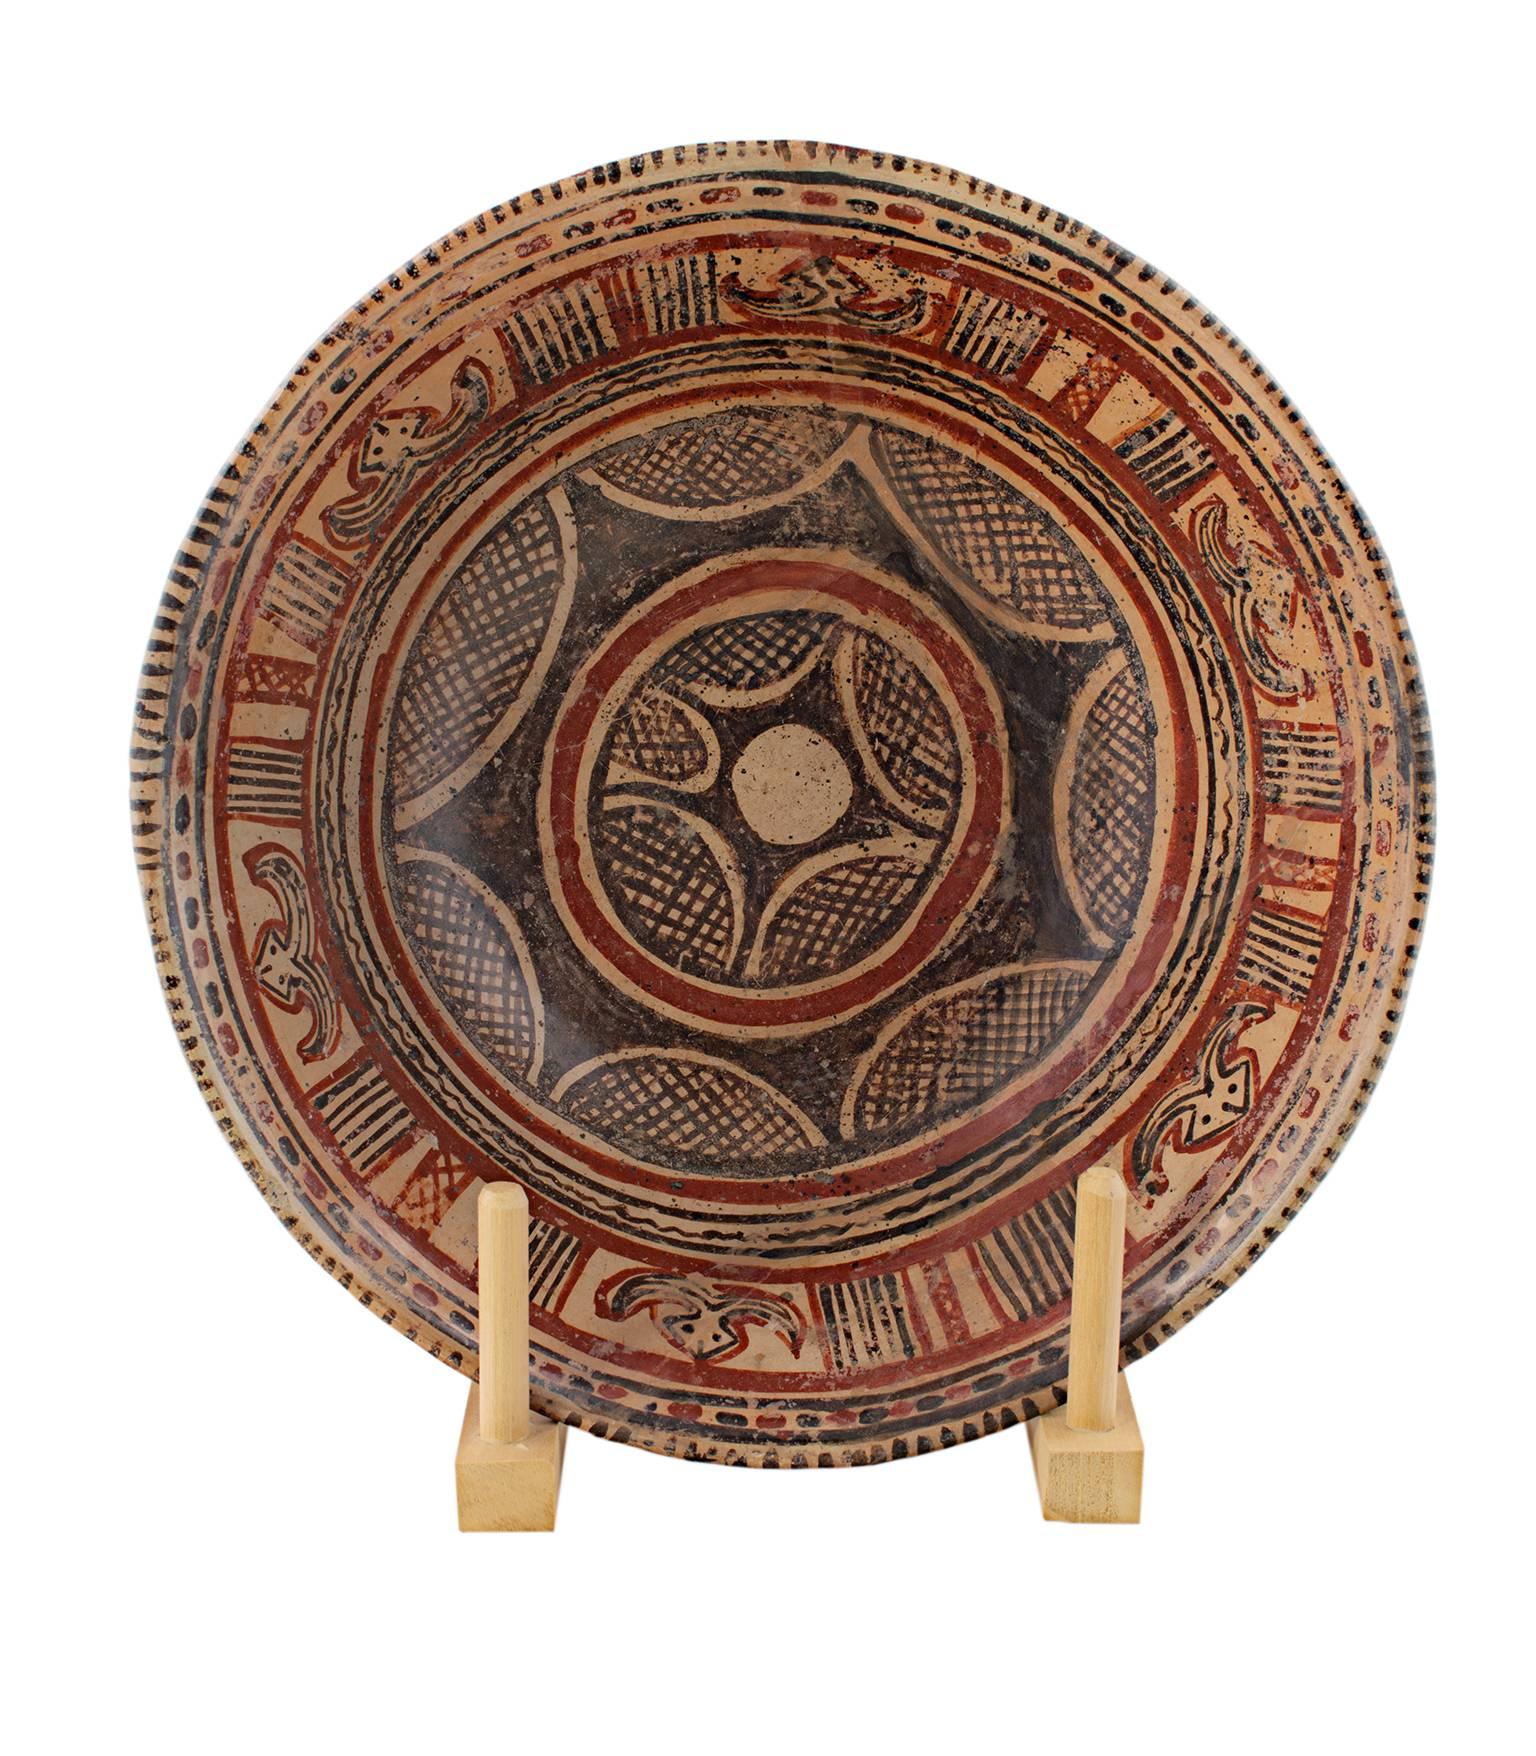 „Prekolumbianische Chinesco-Schale“, glasierte Keramik, um 300 v. Chr.